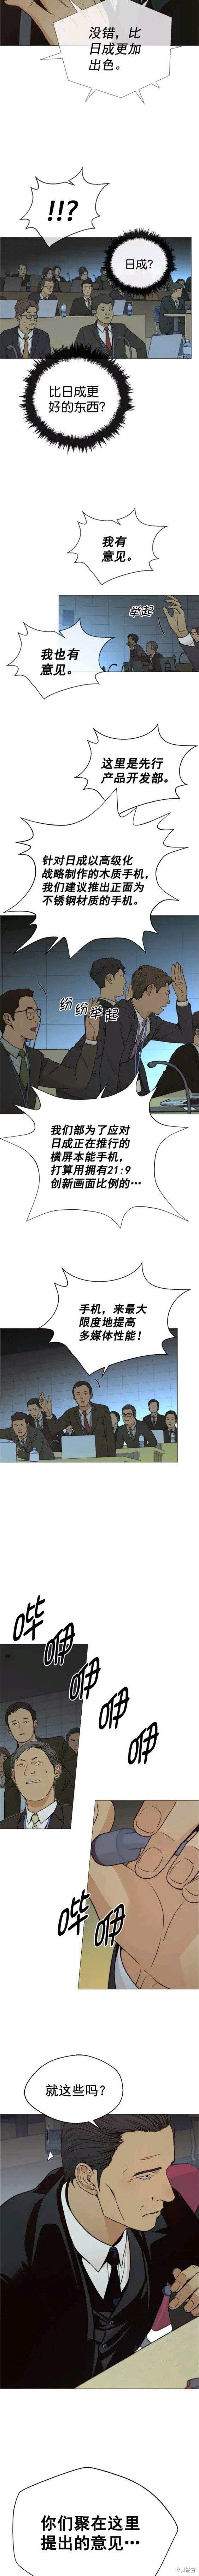 男子汉漫画,第107话5图